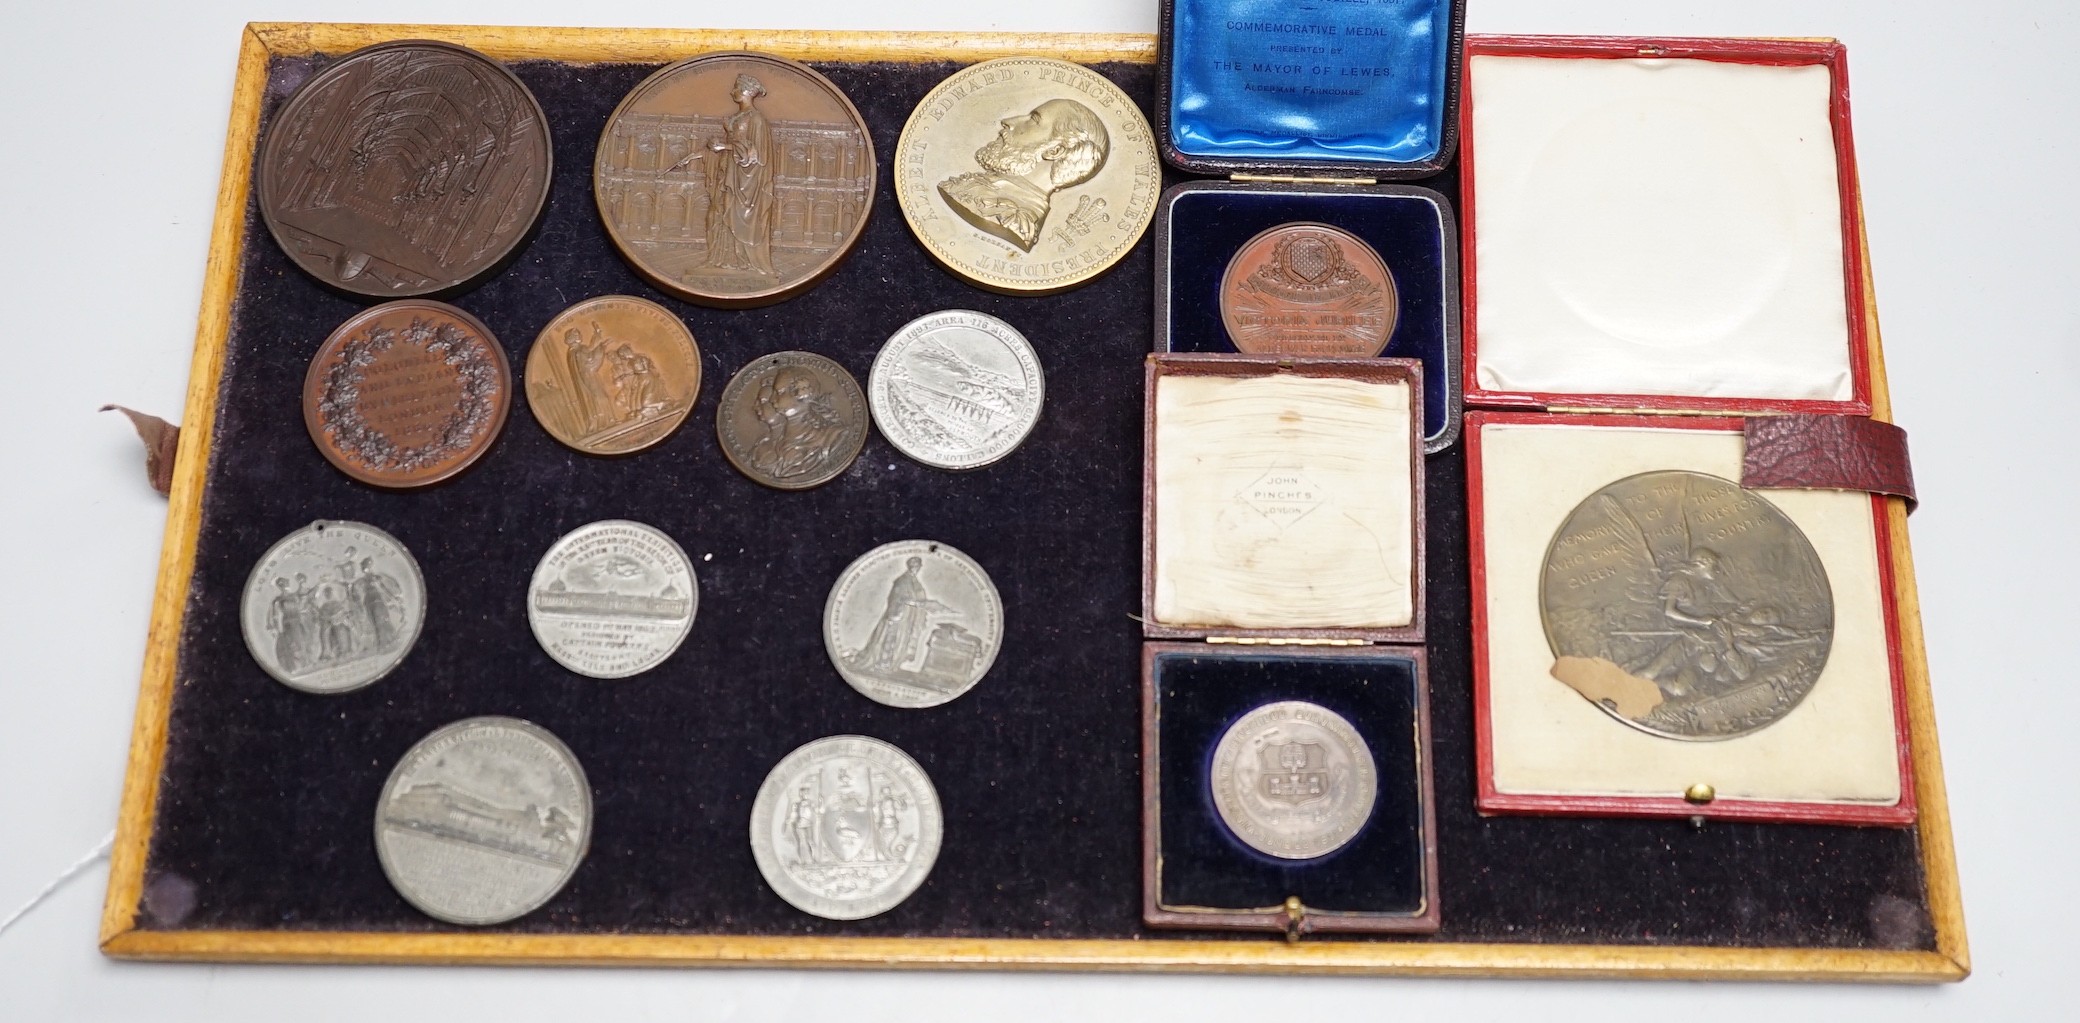 Victorian commemorative medals –